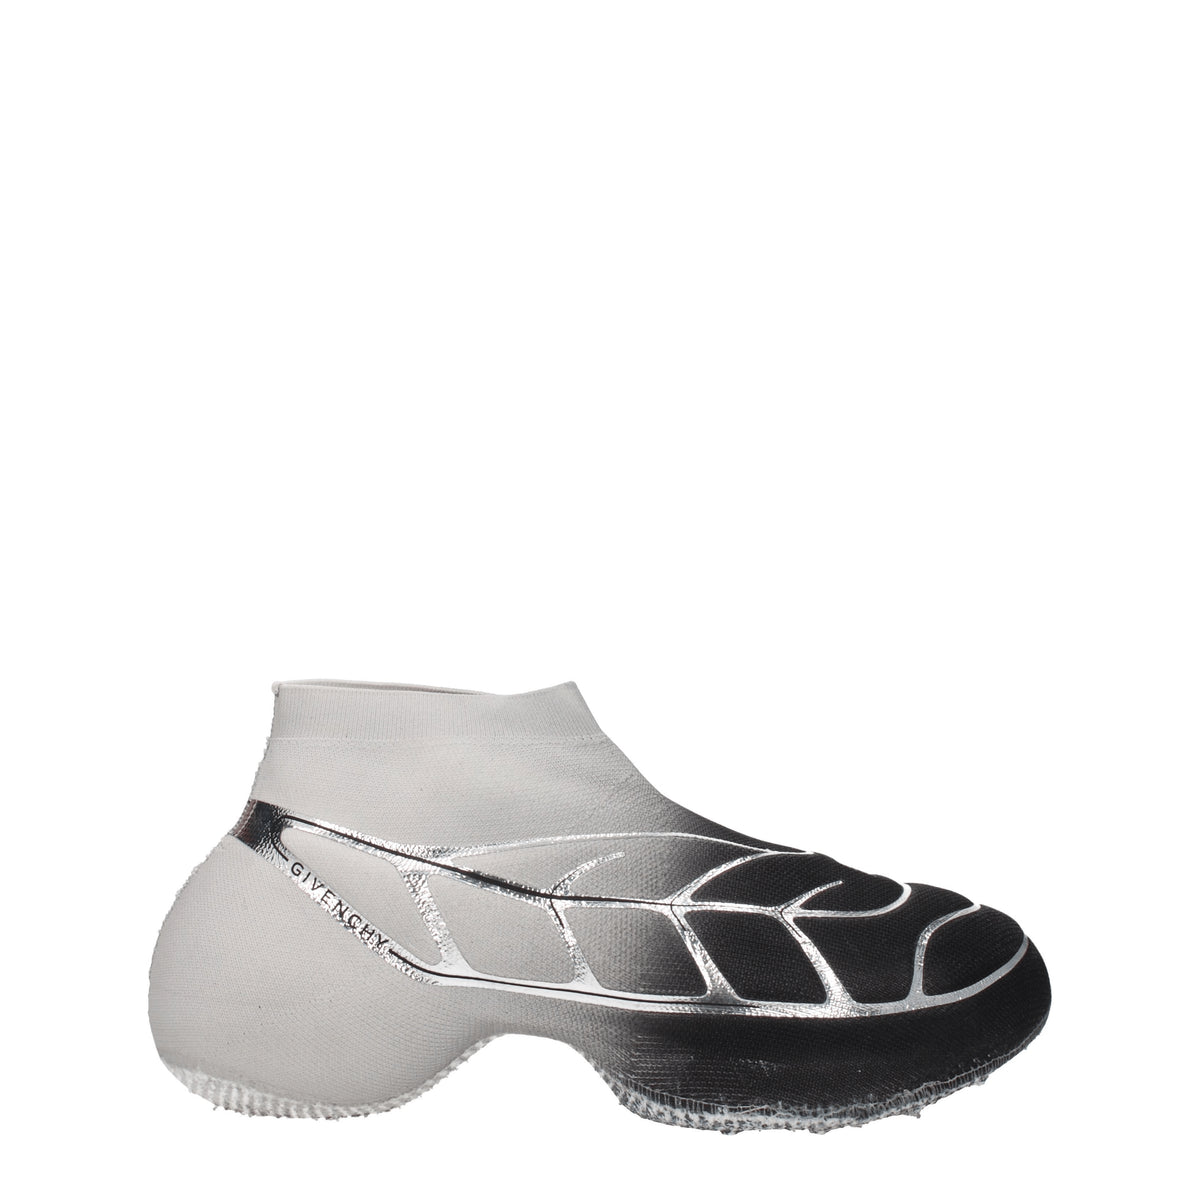 Givenchy Sneakers tk 360 Uomo Tessuto Nero Argento